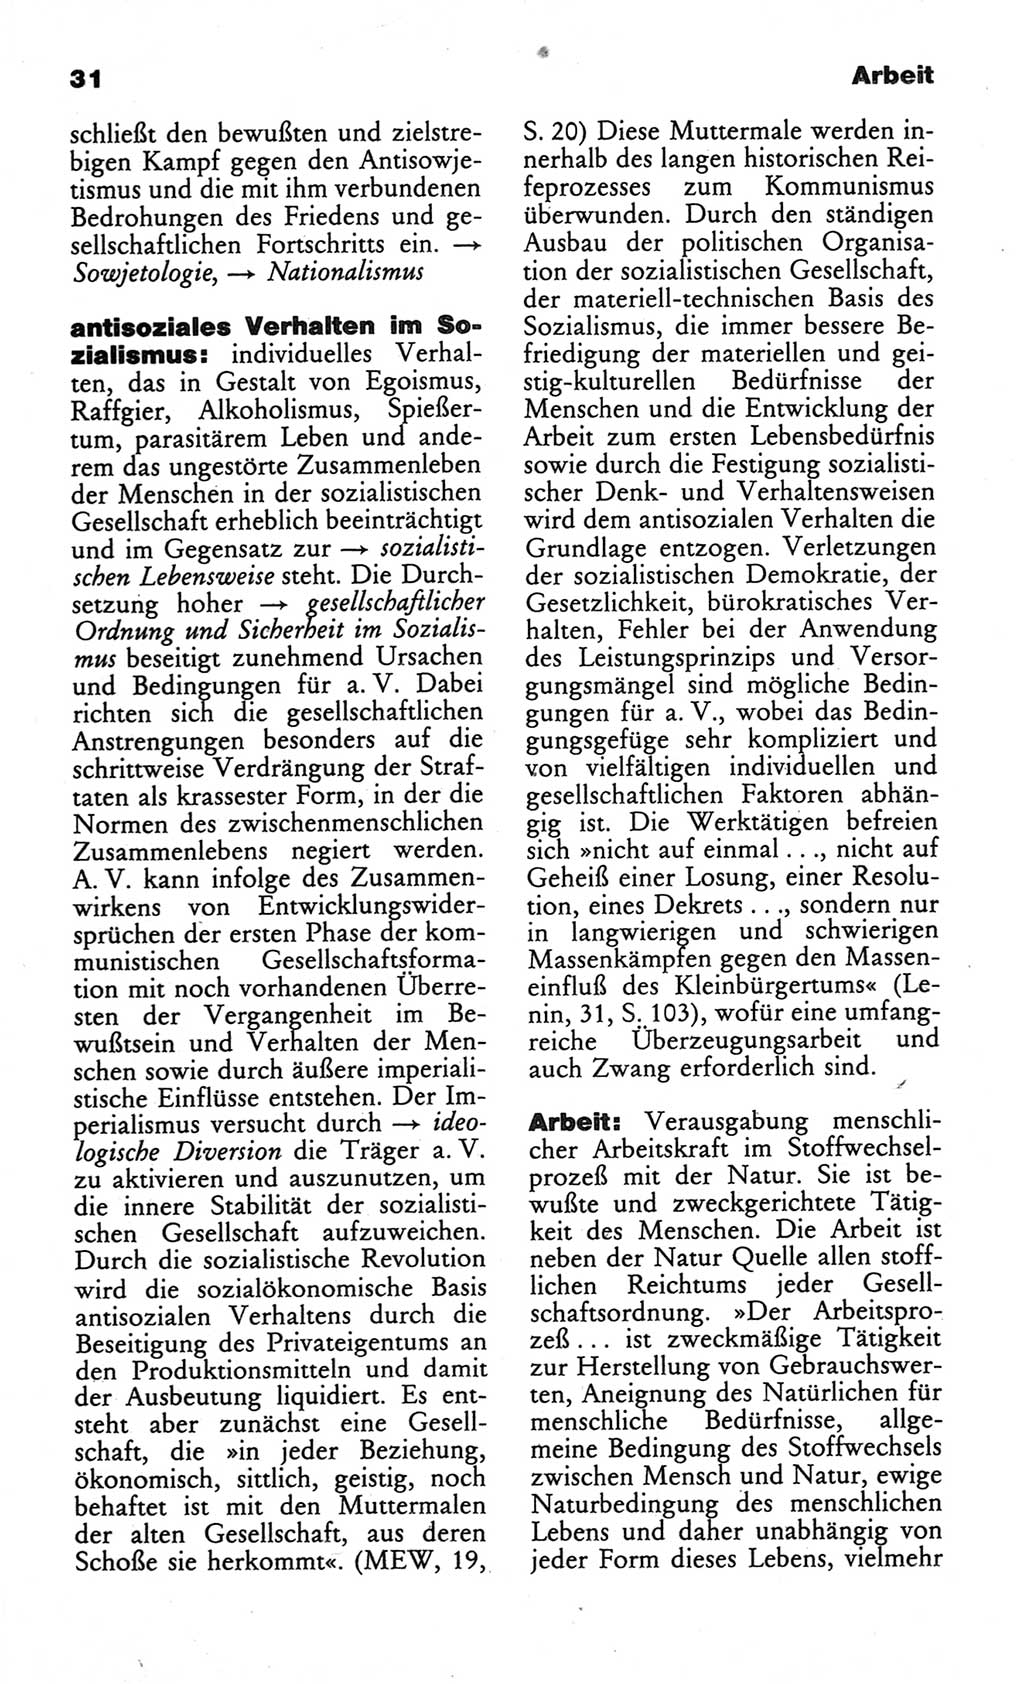 Wörterbuch des wissenschaftlichen Kommunismus [Deutsche Demokratische Republik (DDR)] 1984, Seite 31 (Wb. wiss. Komm. DDR 1984, S. 31)